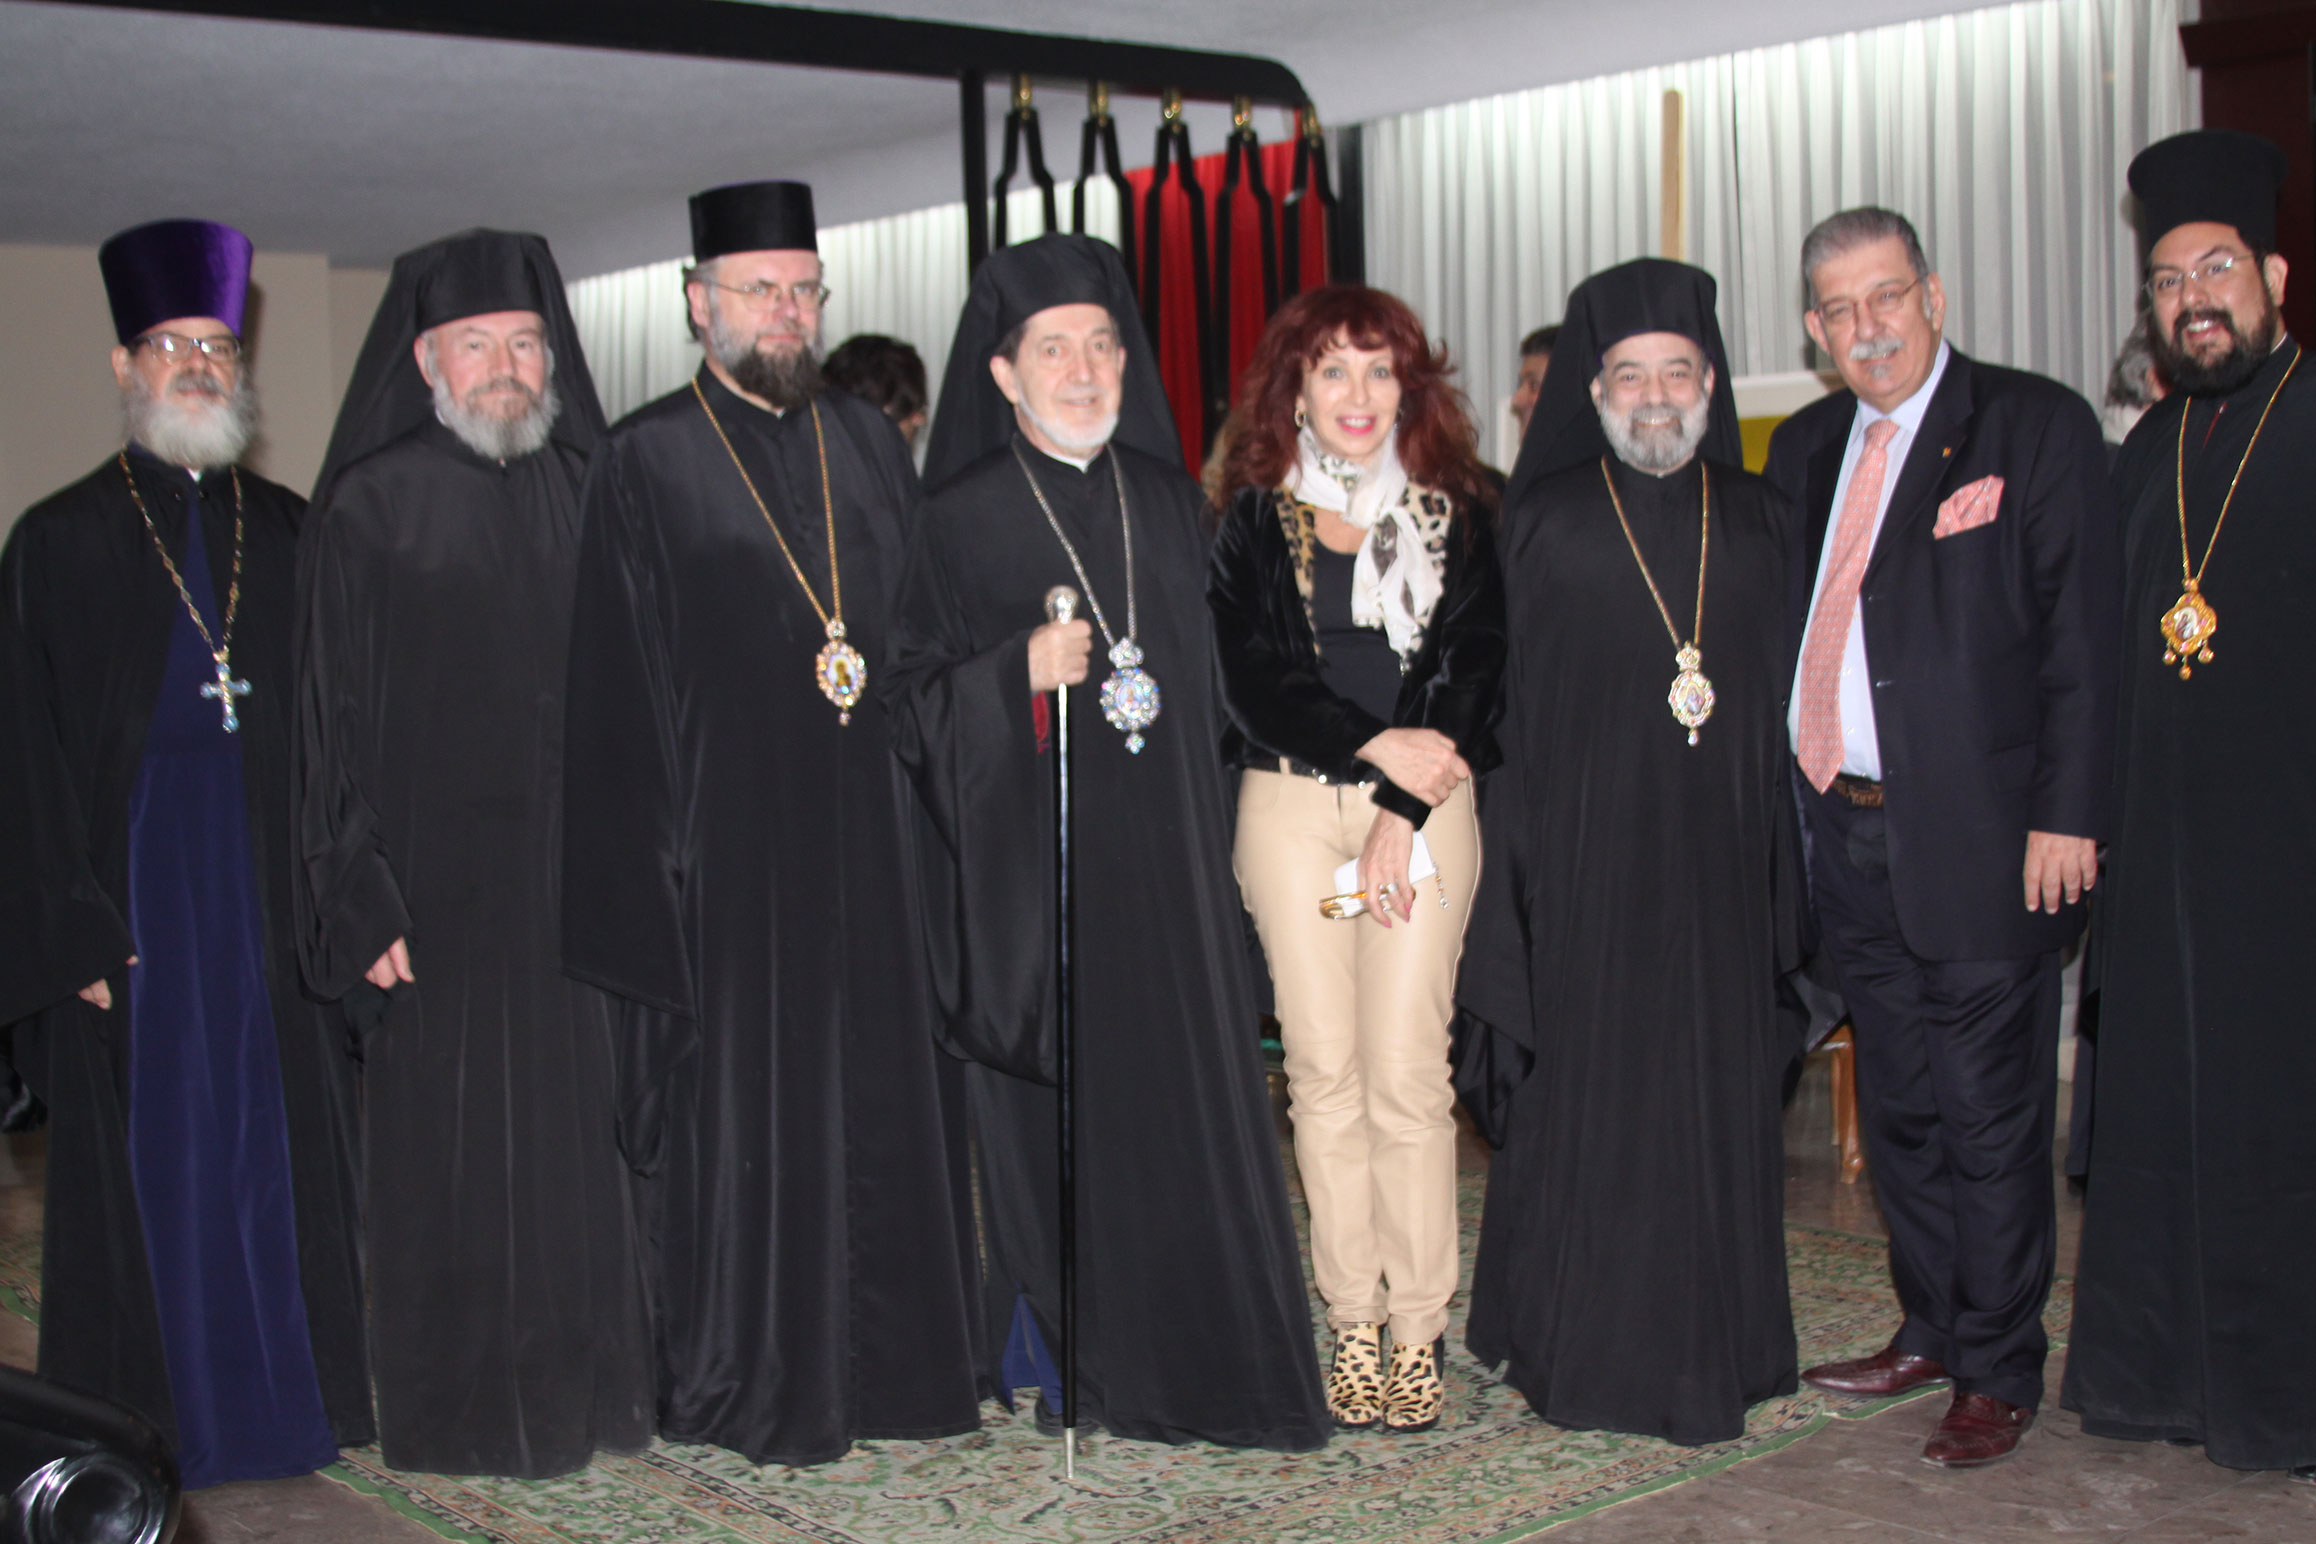 Altos jerarcas de la iglesia ortodoxa griega visitaron México – Protocolo  Foreign Affairs & Lifestyle